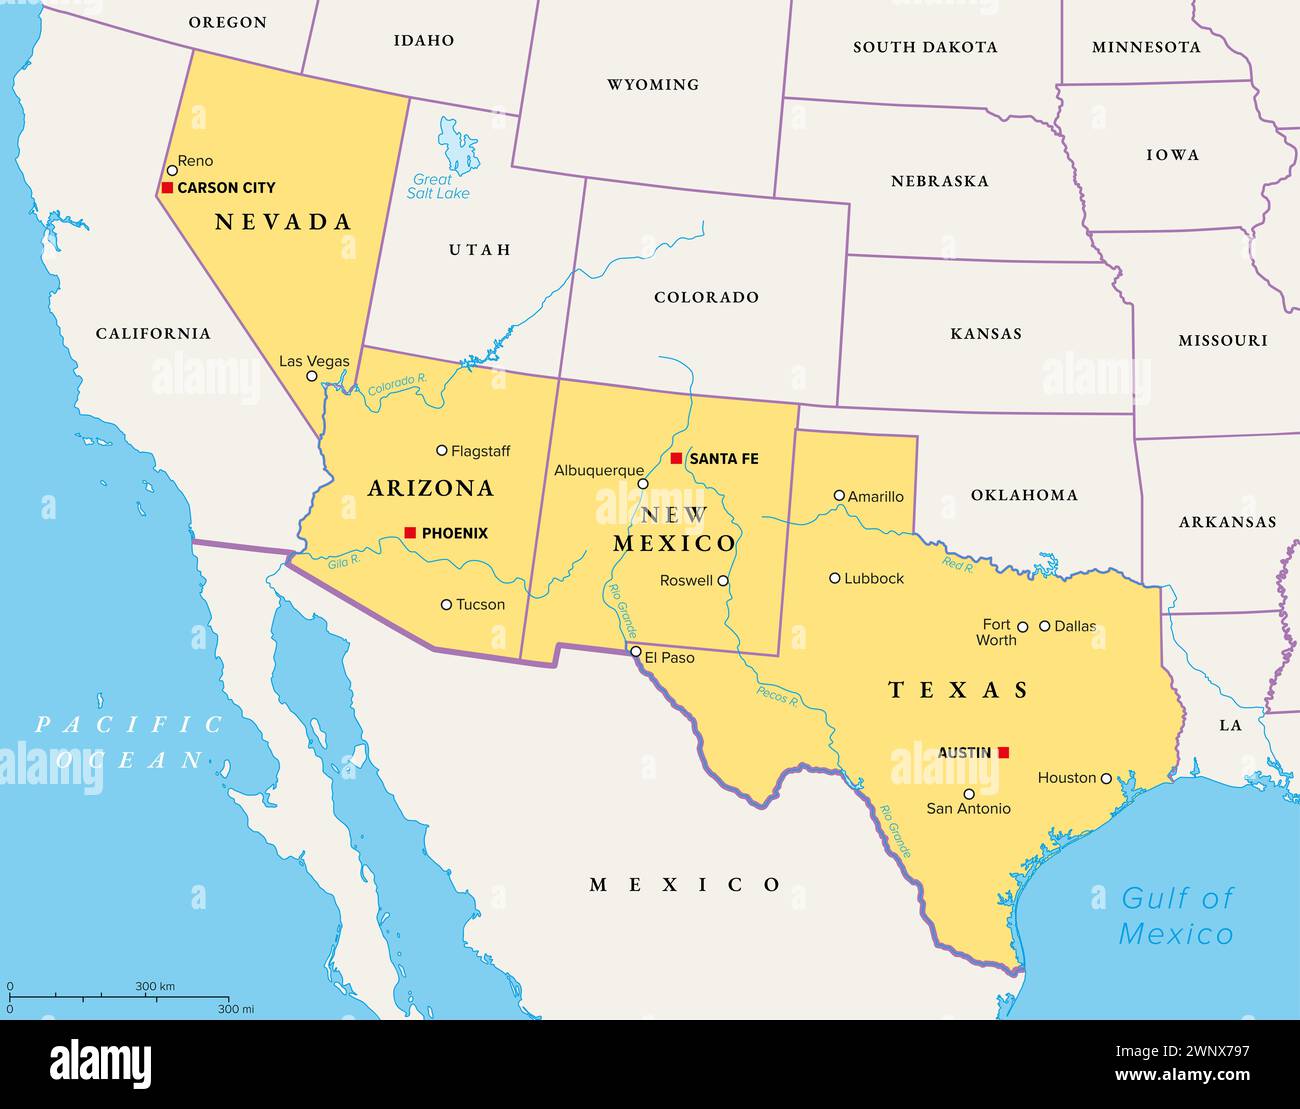 Südwestliche Region der Vereinigten Staaten, politische Karte. Staaten des amerikanischen Südwestens oder einfach Südwesten. Geografische und kulturelle Region. Stockfoto